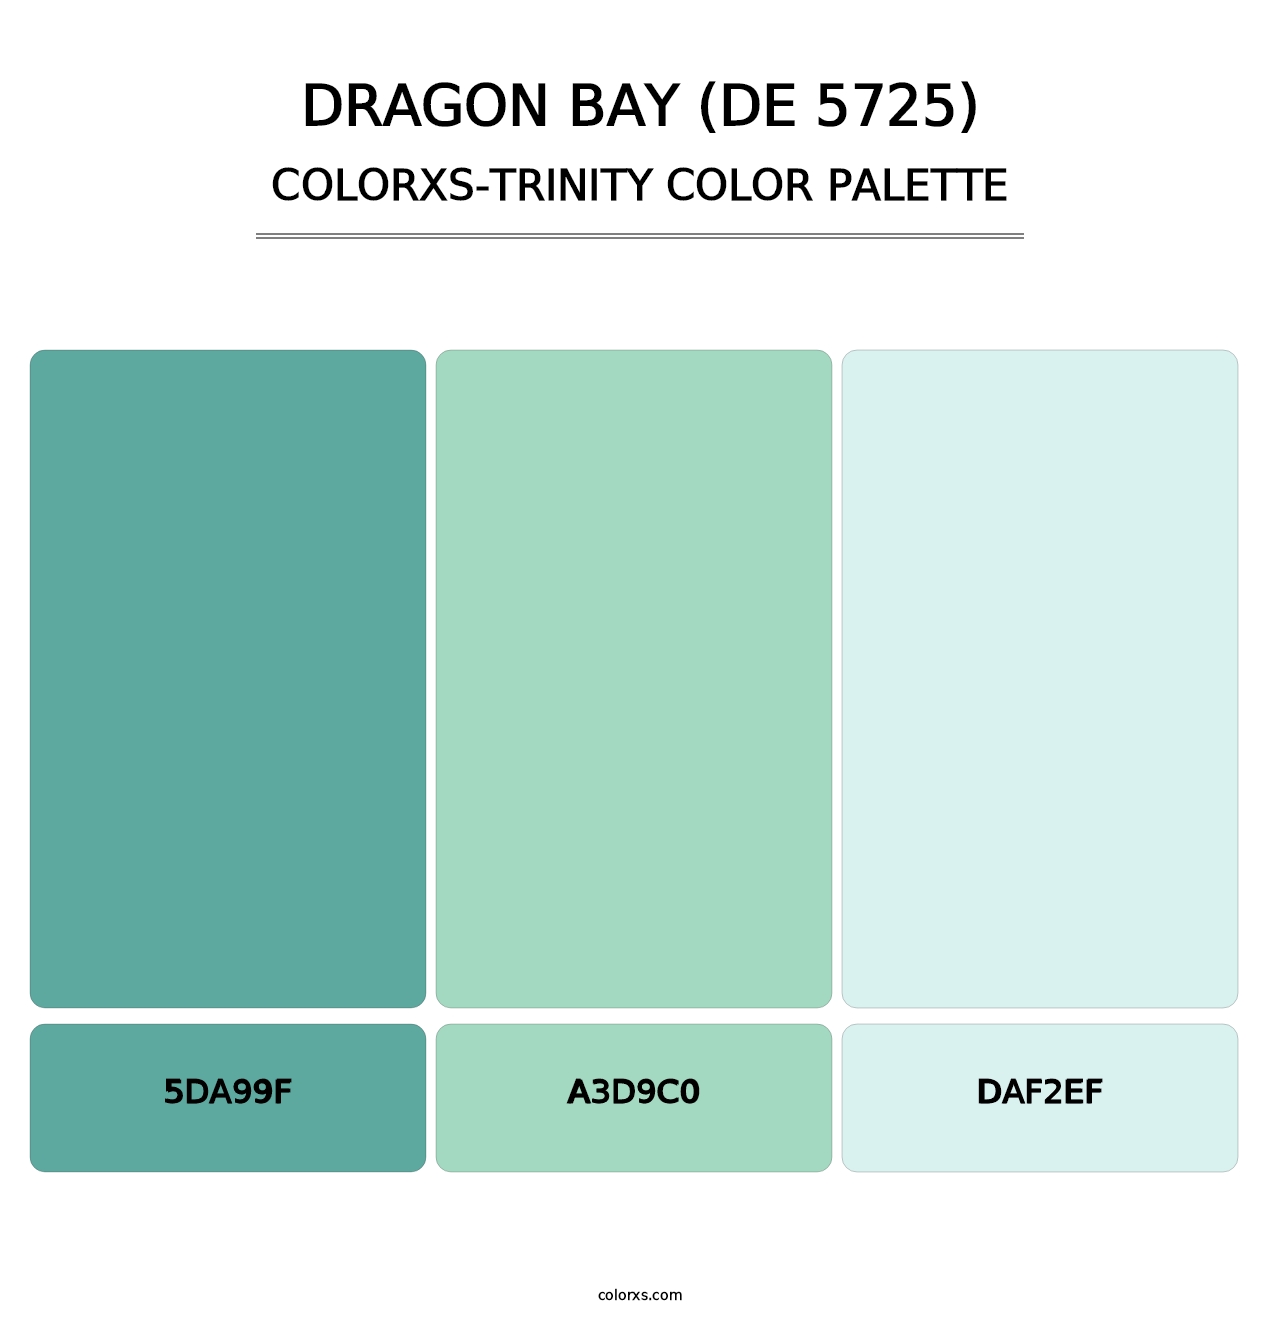 Dragon Bay (DE 5725) - Colorxs Trinity Palette